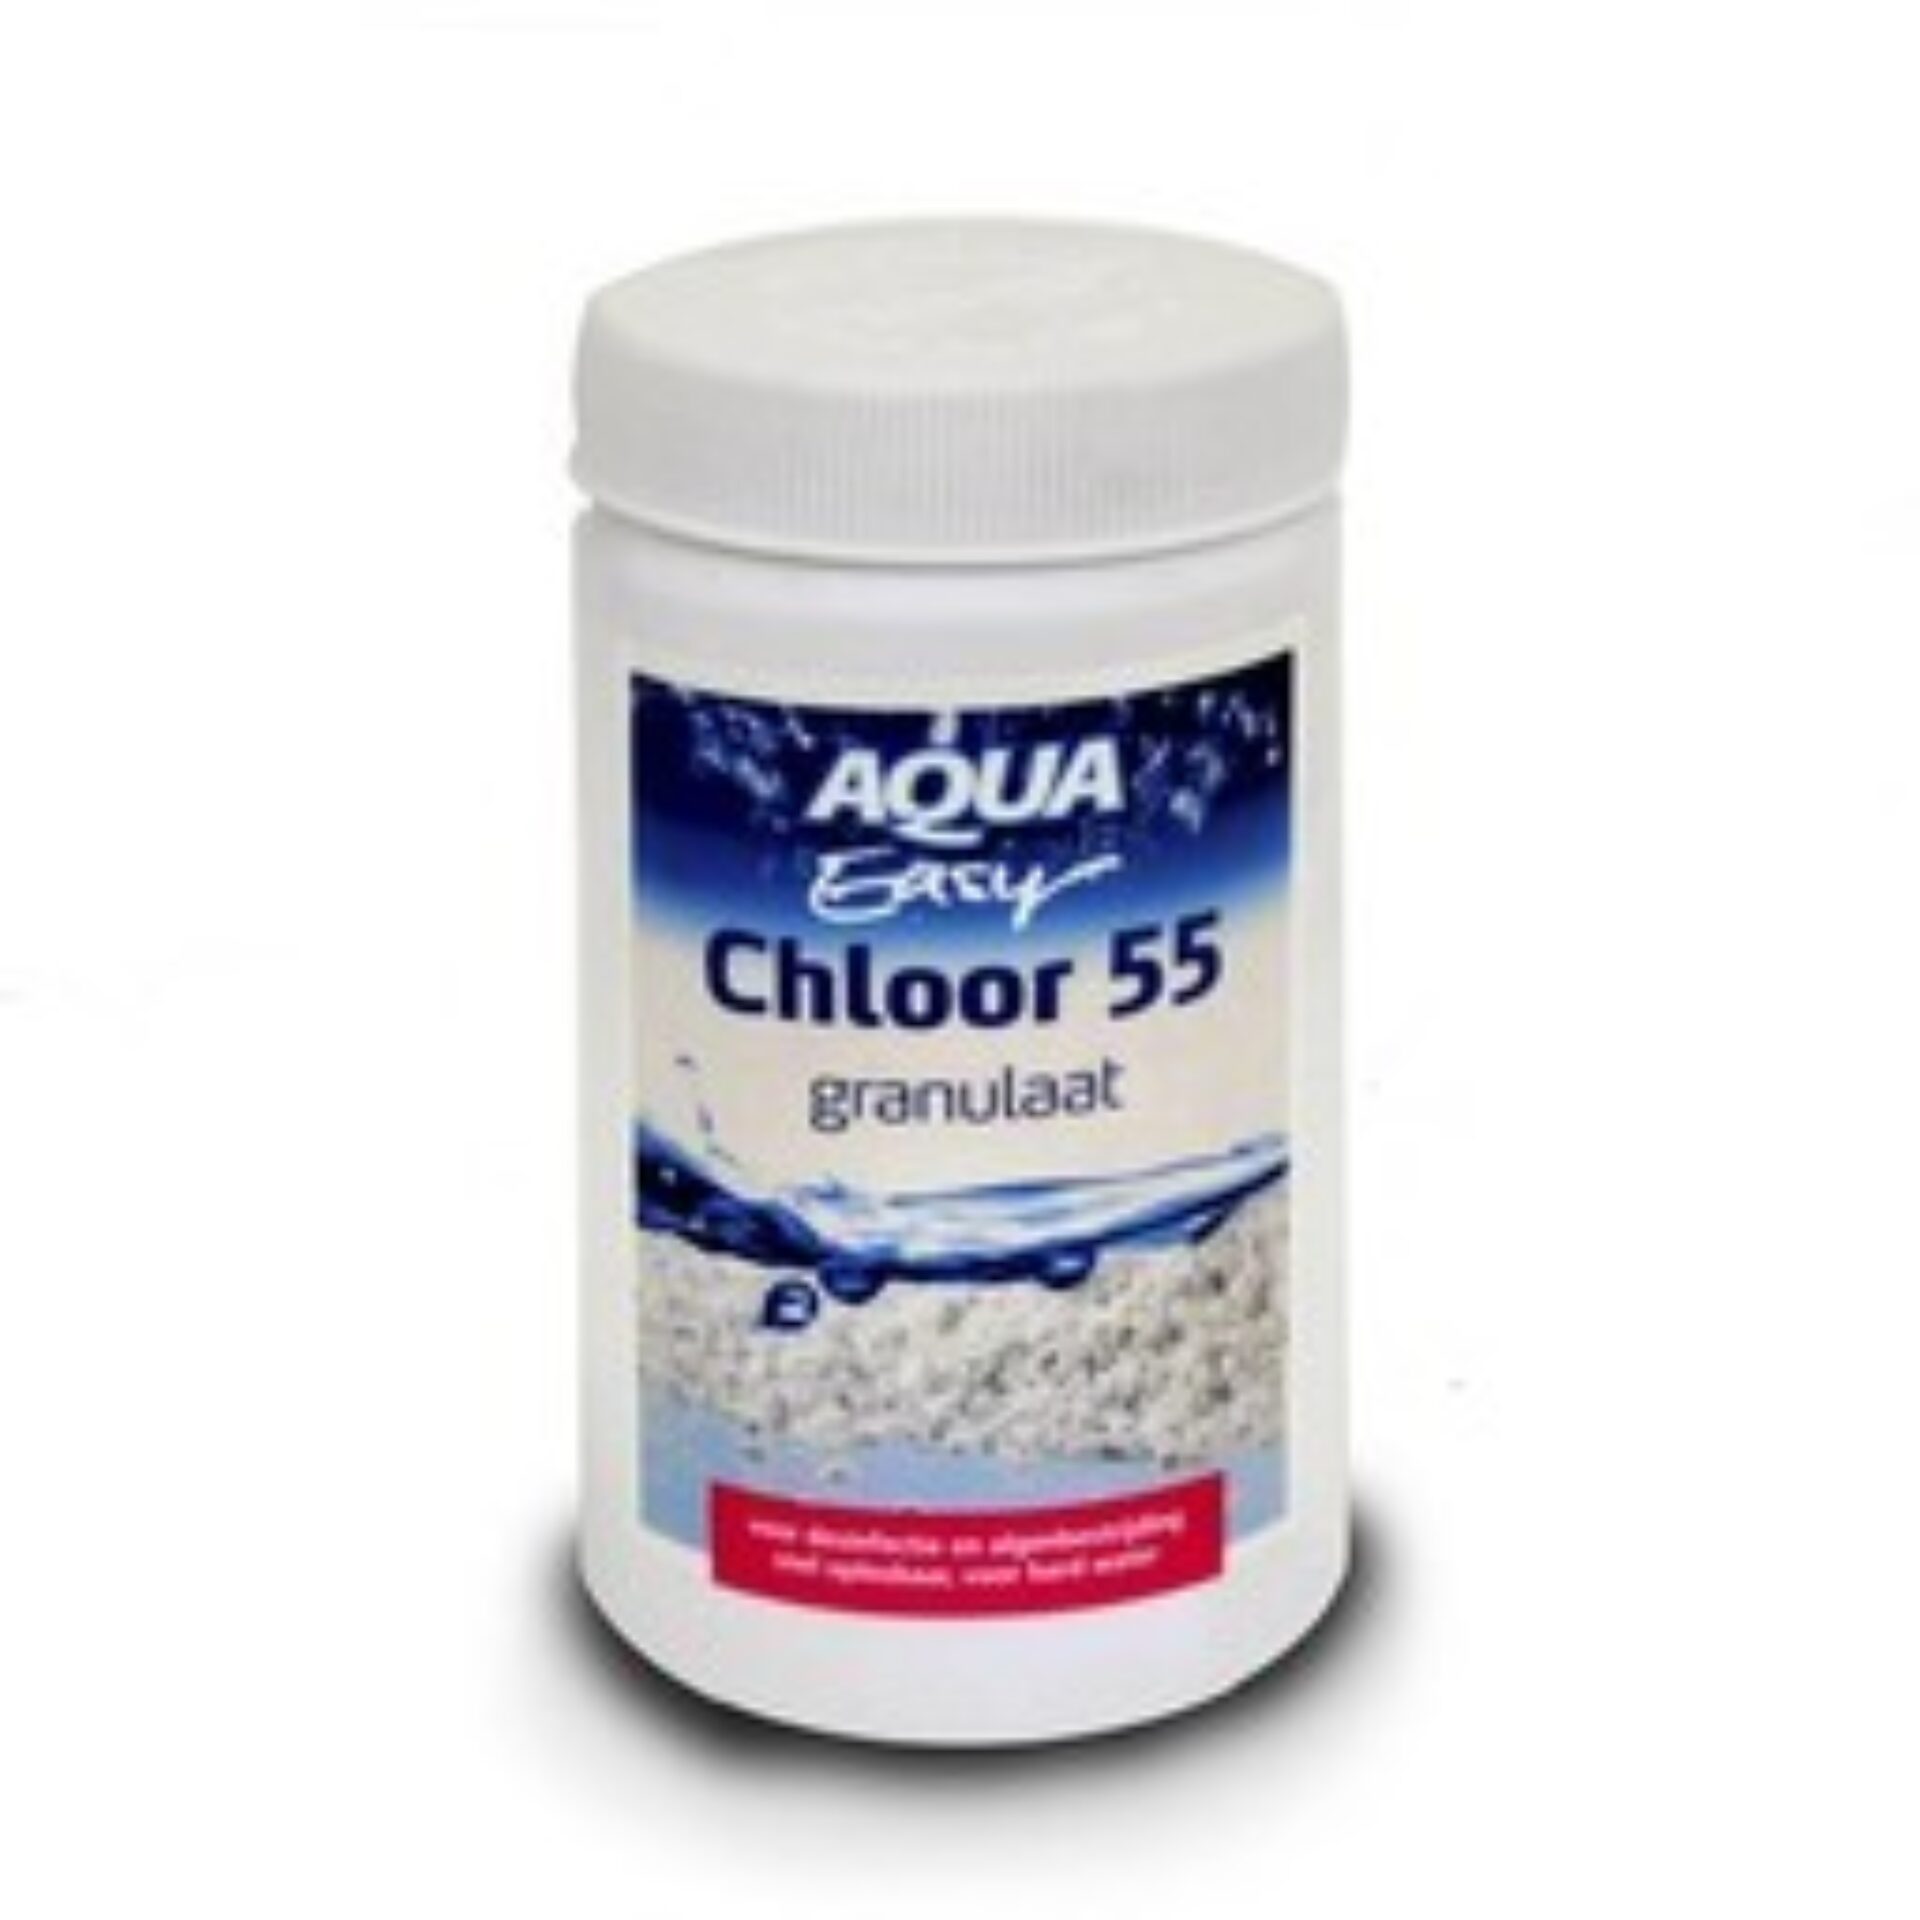 Chloor 55 granulaat (1kg)